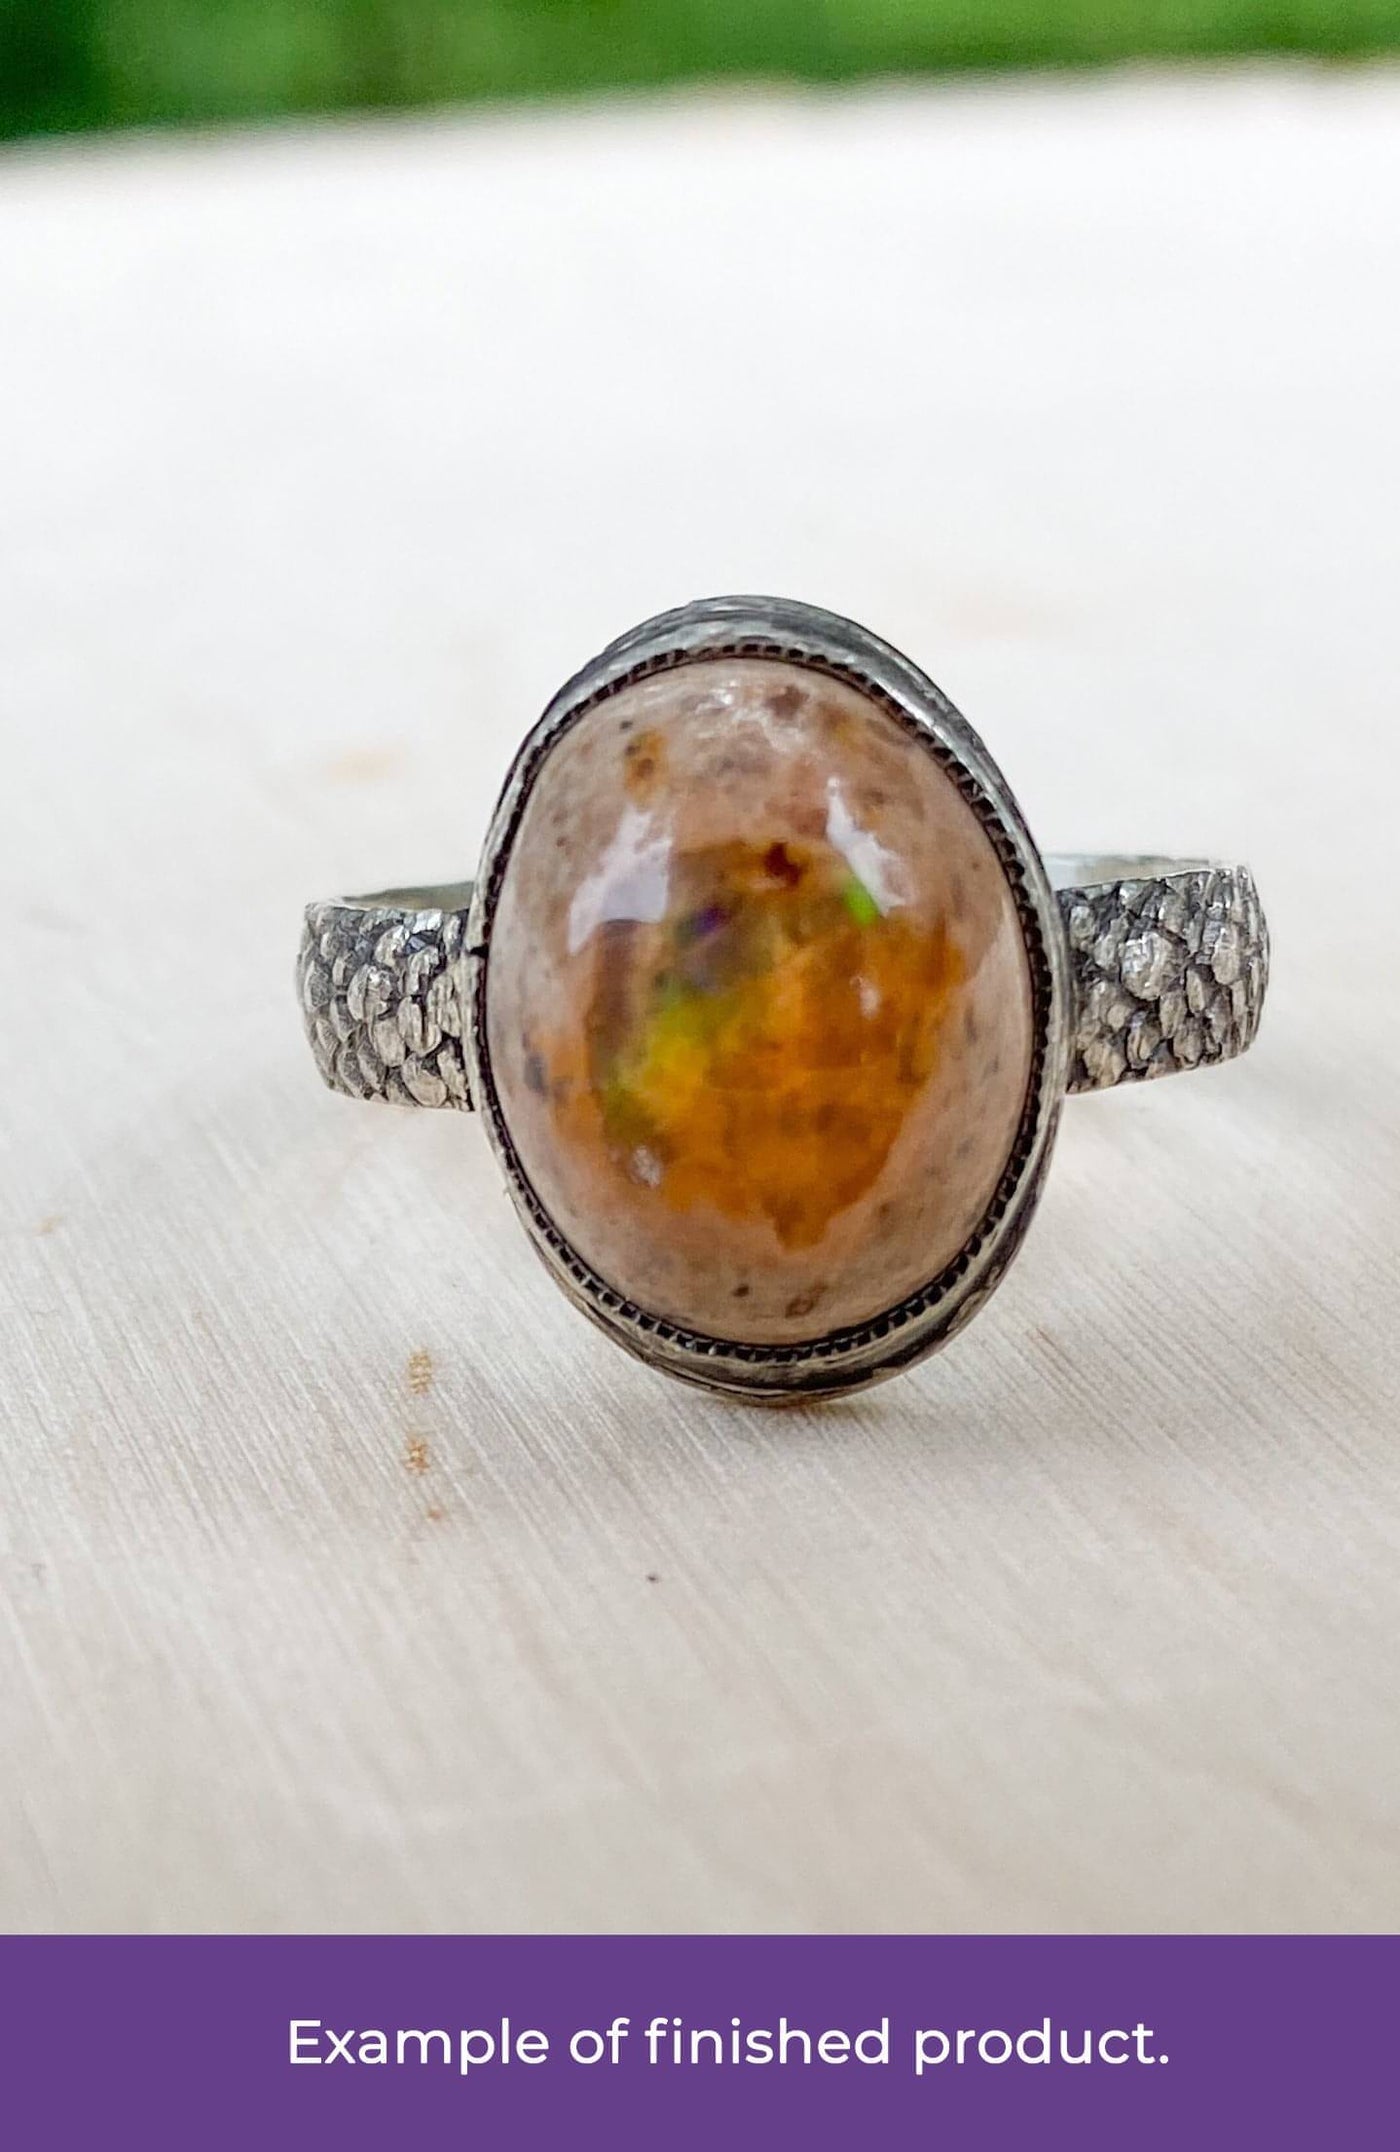 Aeris, Air Dragon Egg Opal Ring